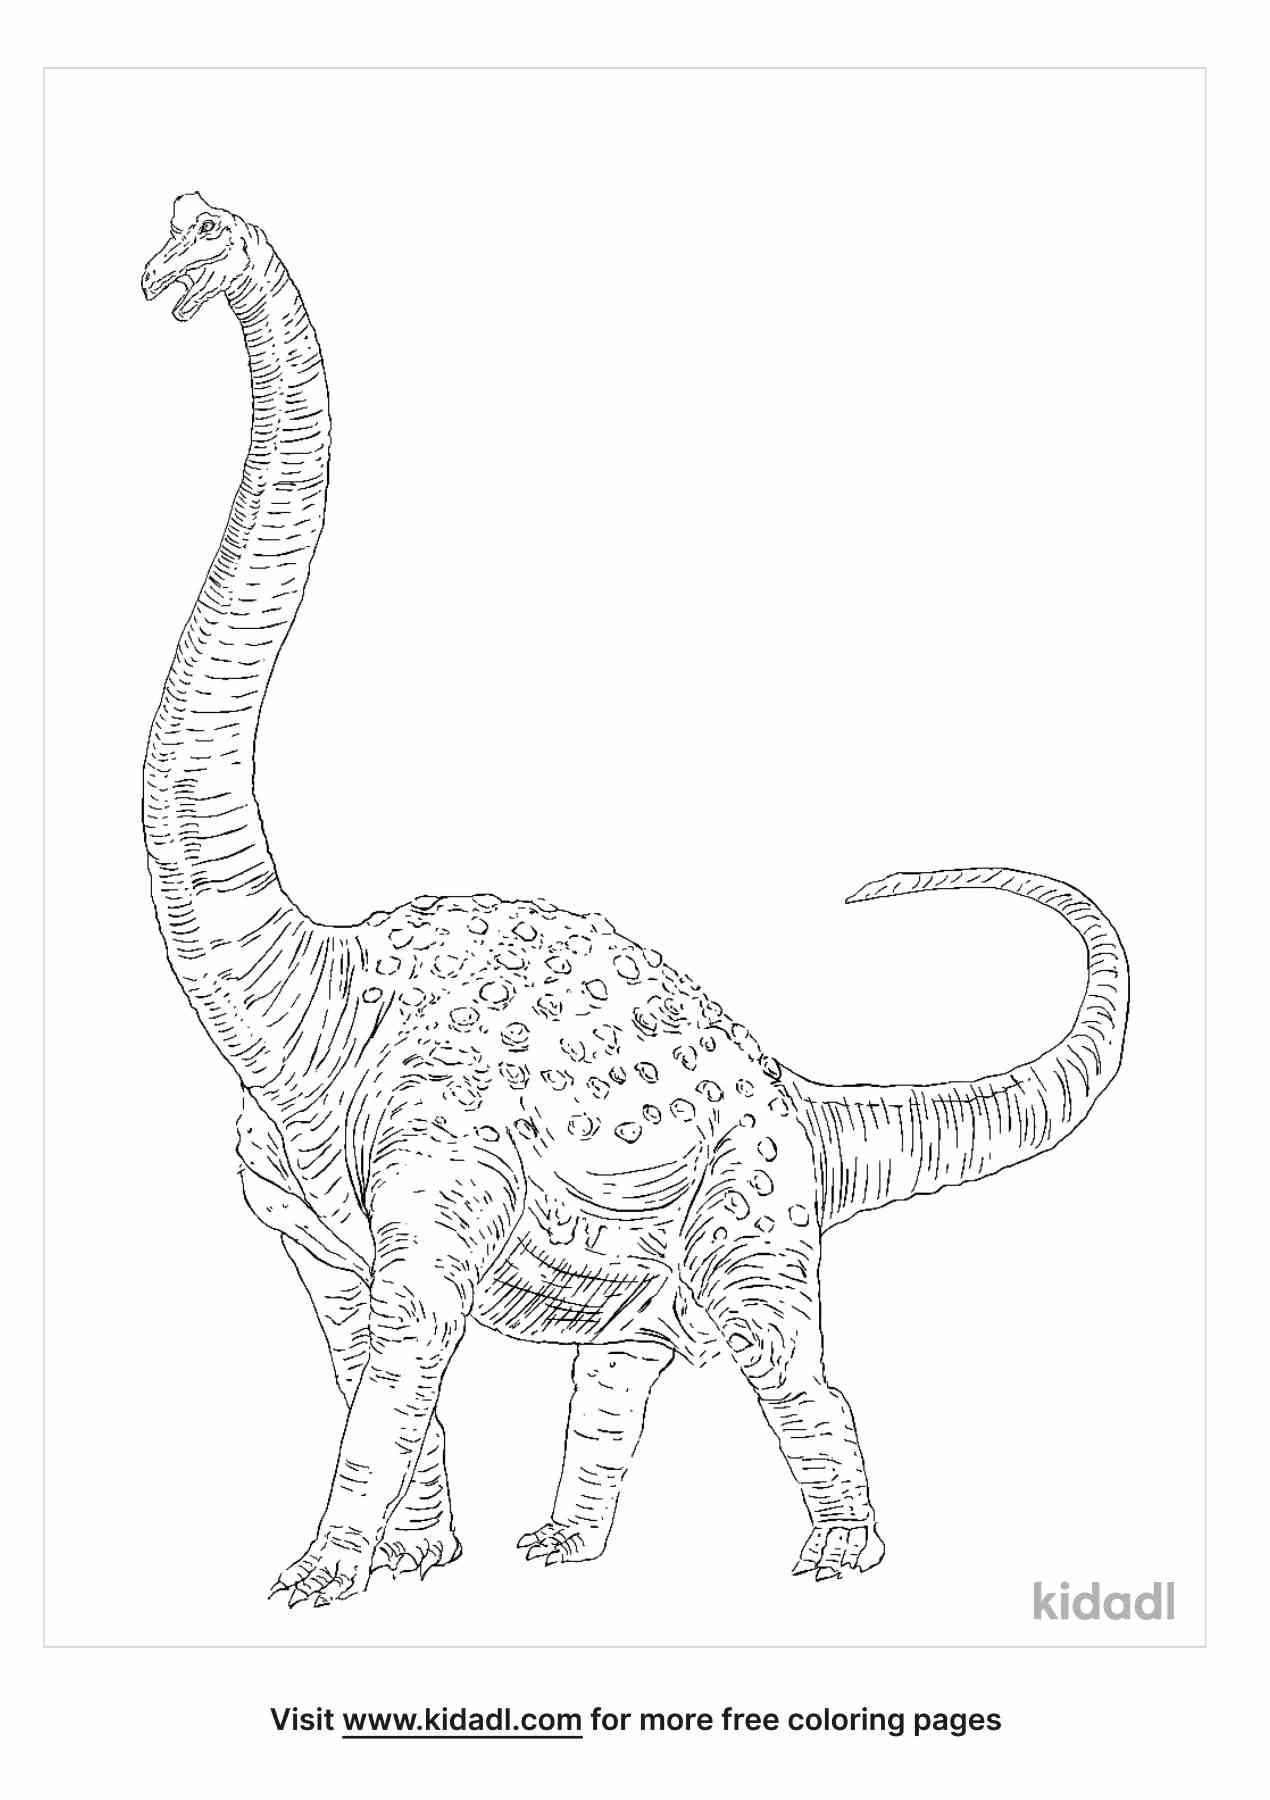 Have fun coloring this amazing Pelorosaurus.